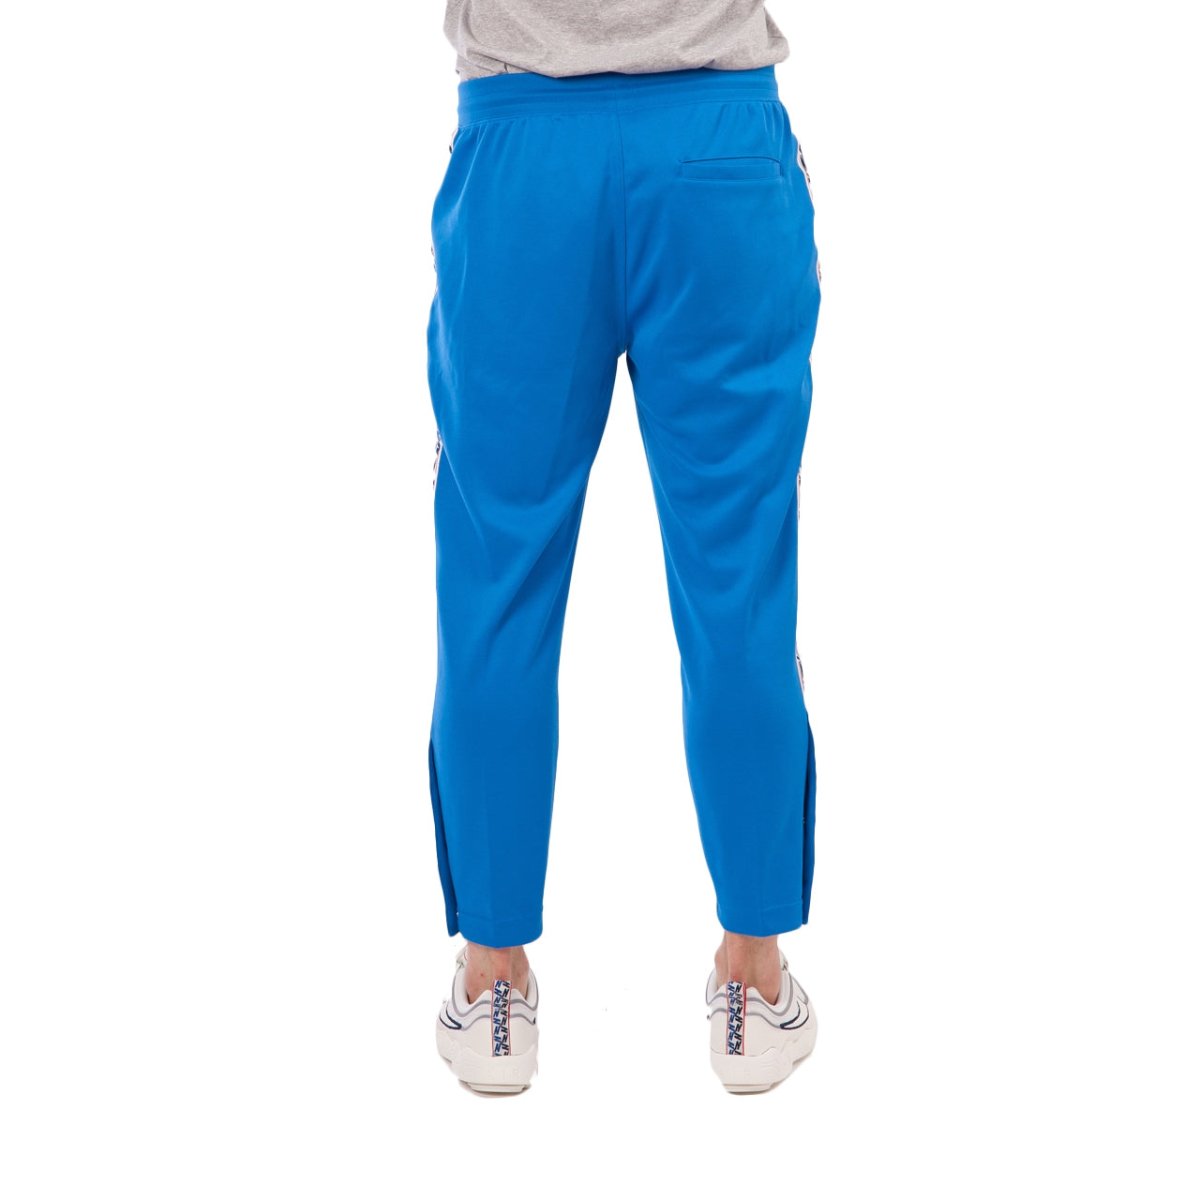 Nike NSW Taped Poly Pants (Blau / Weiß)  - Allike Store